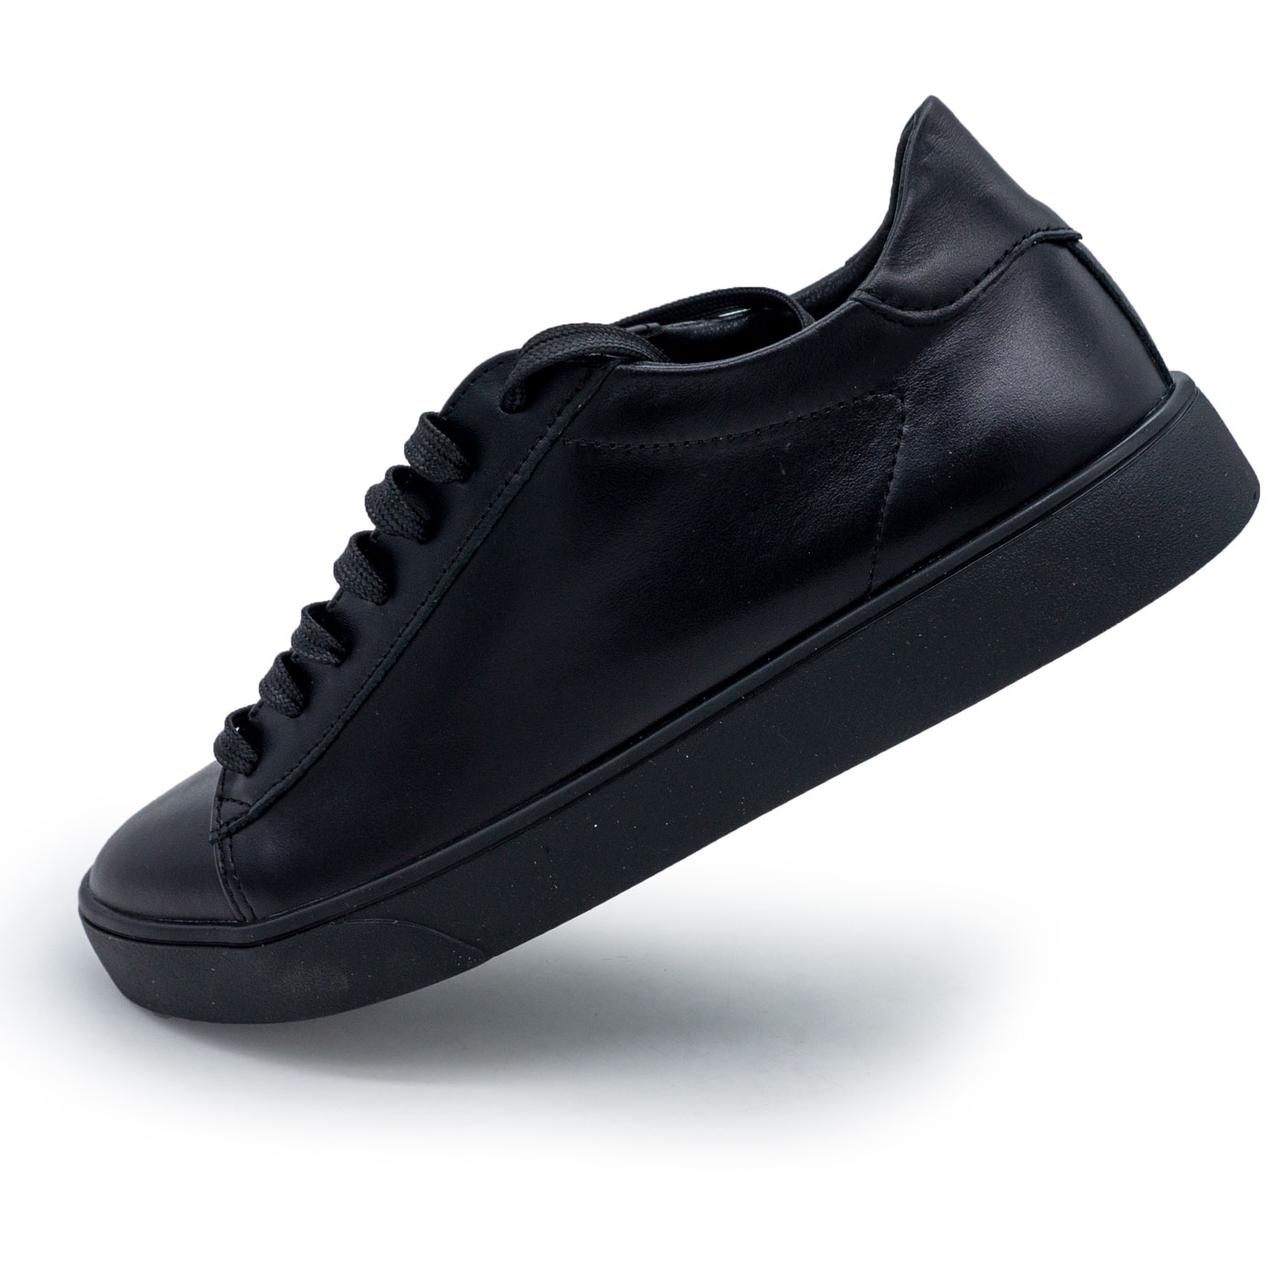 Жіночі чорні шкіряні кросівки Kelly Corso 37. Розміри в наявності: 37, 39, 41, 42.